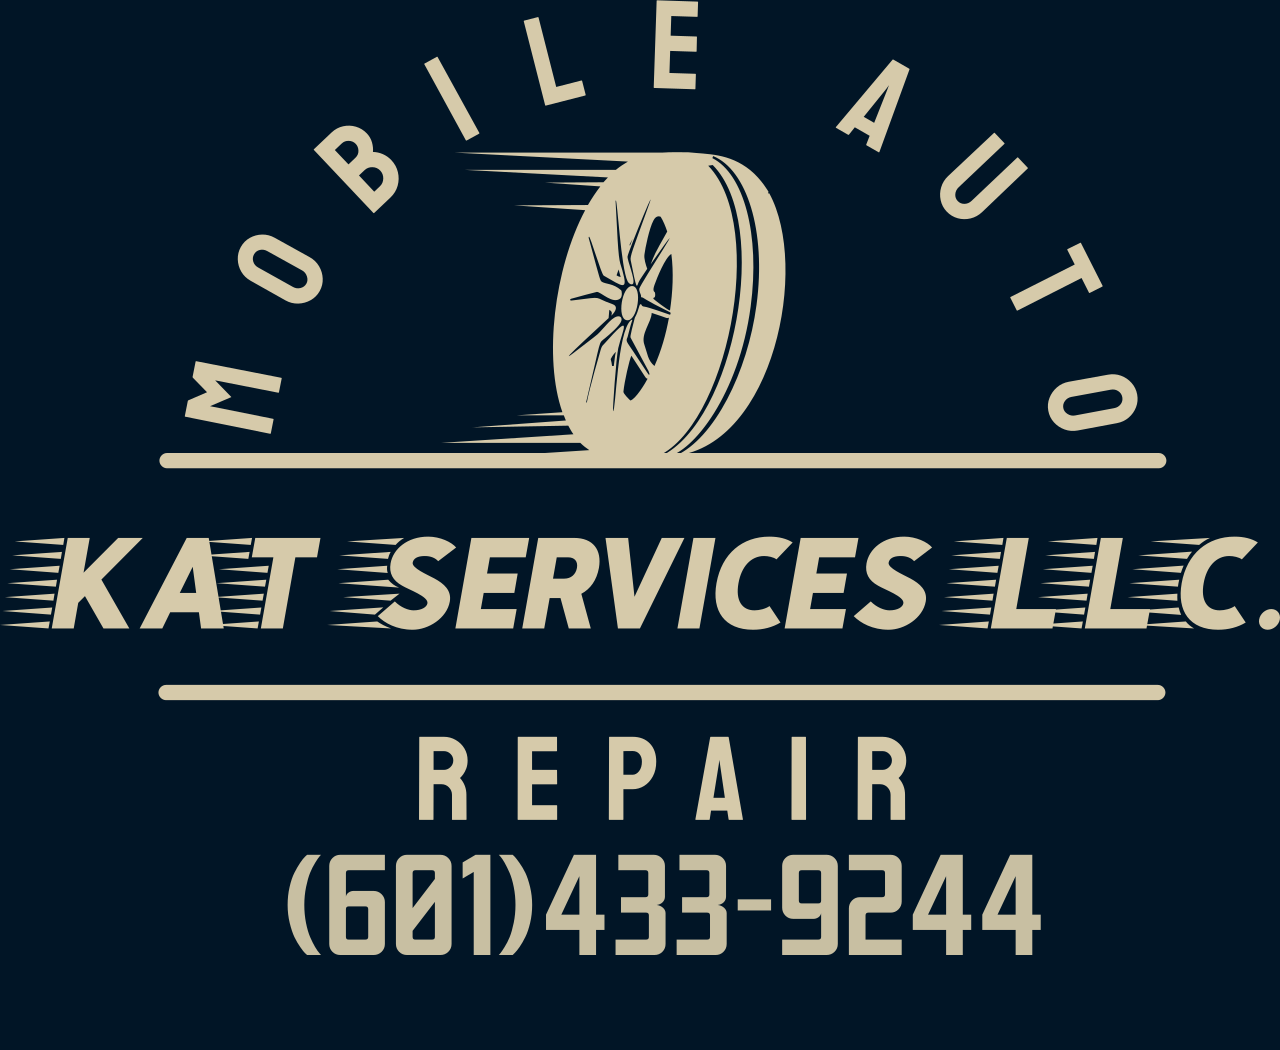 KaT Services LLC.'s logo